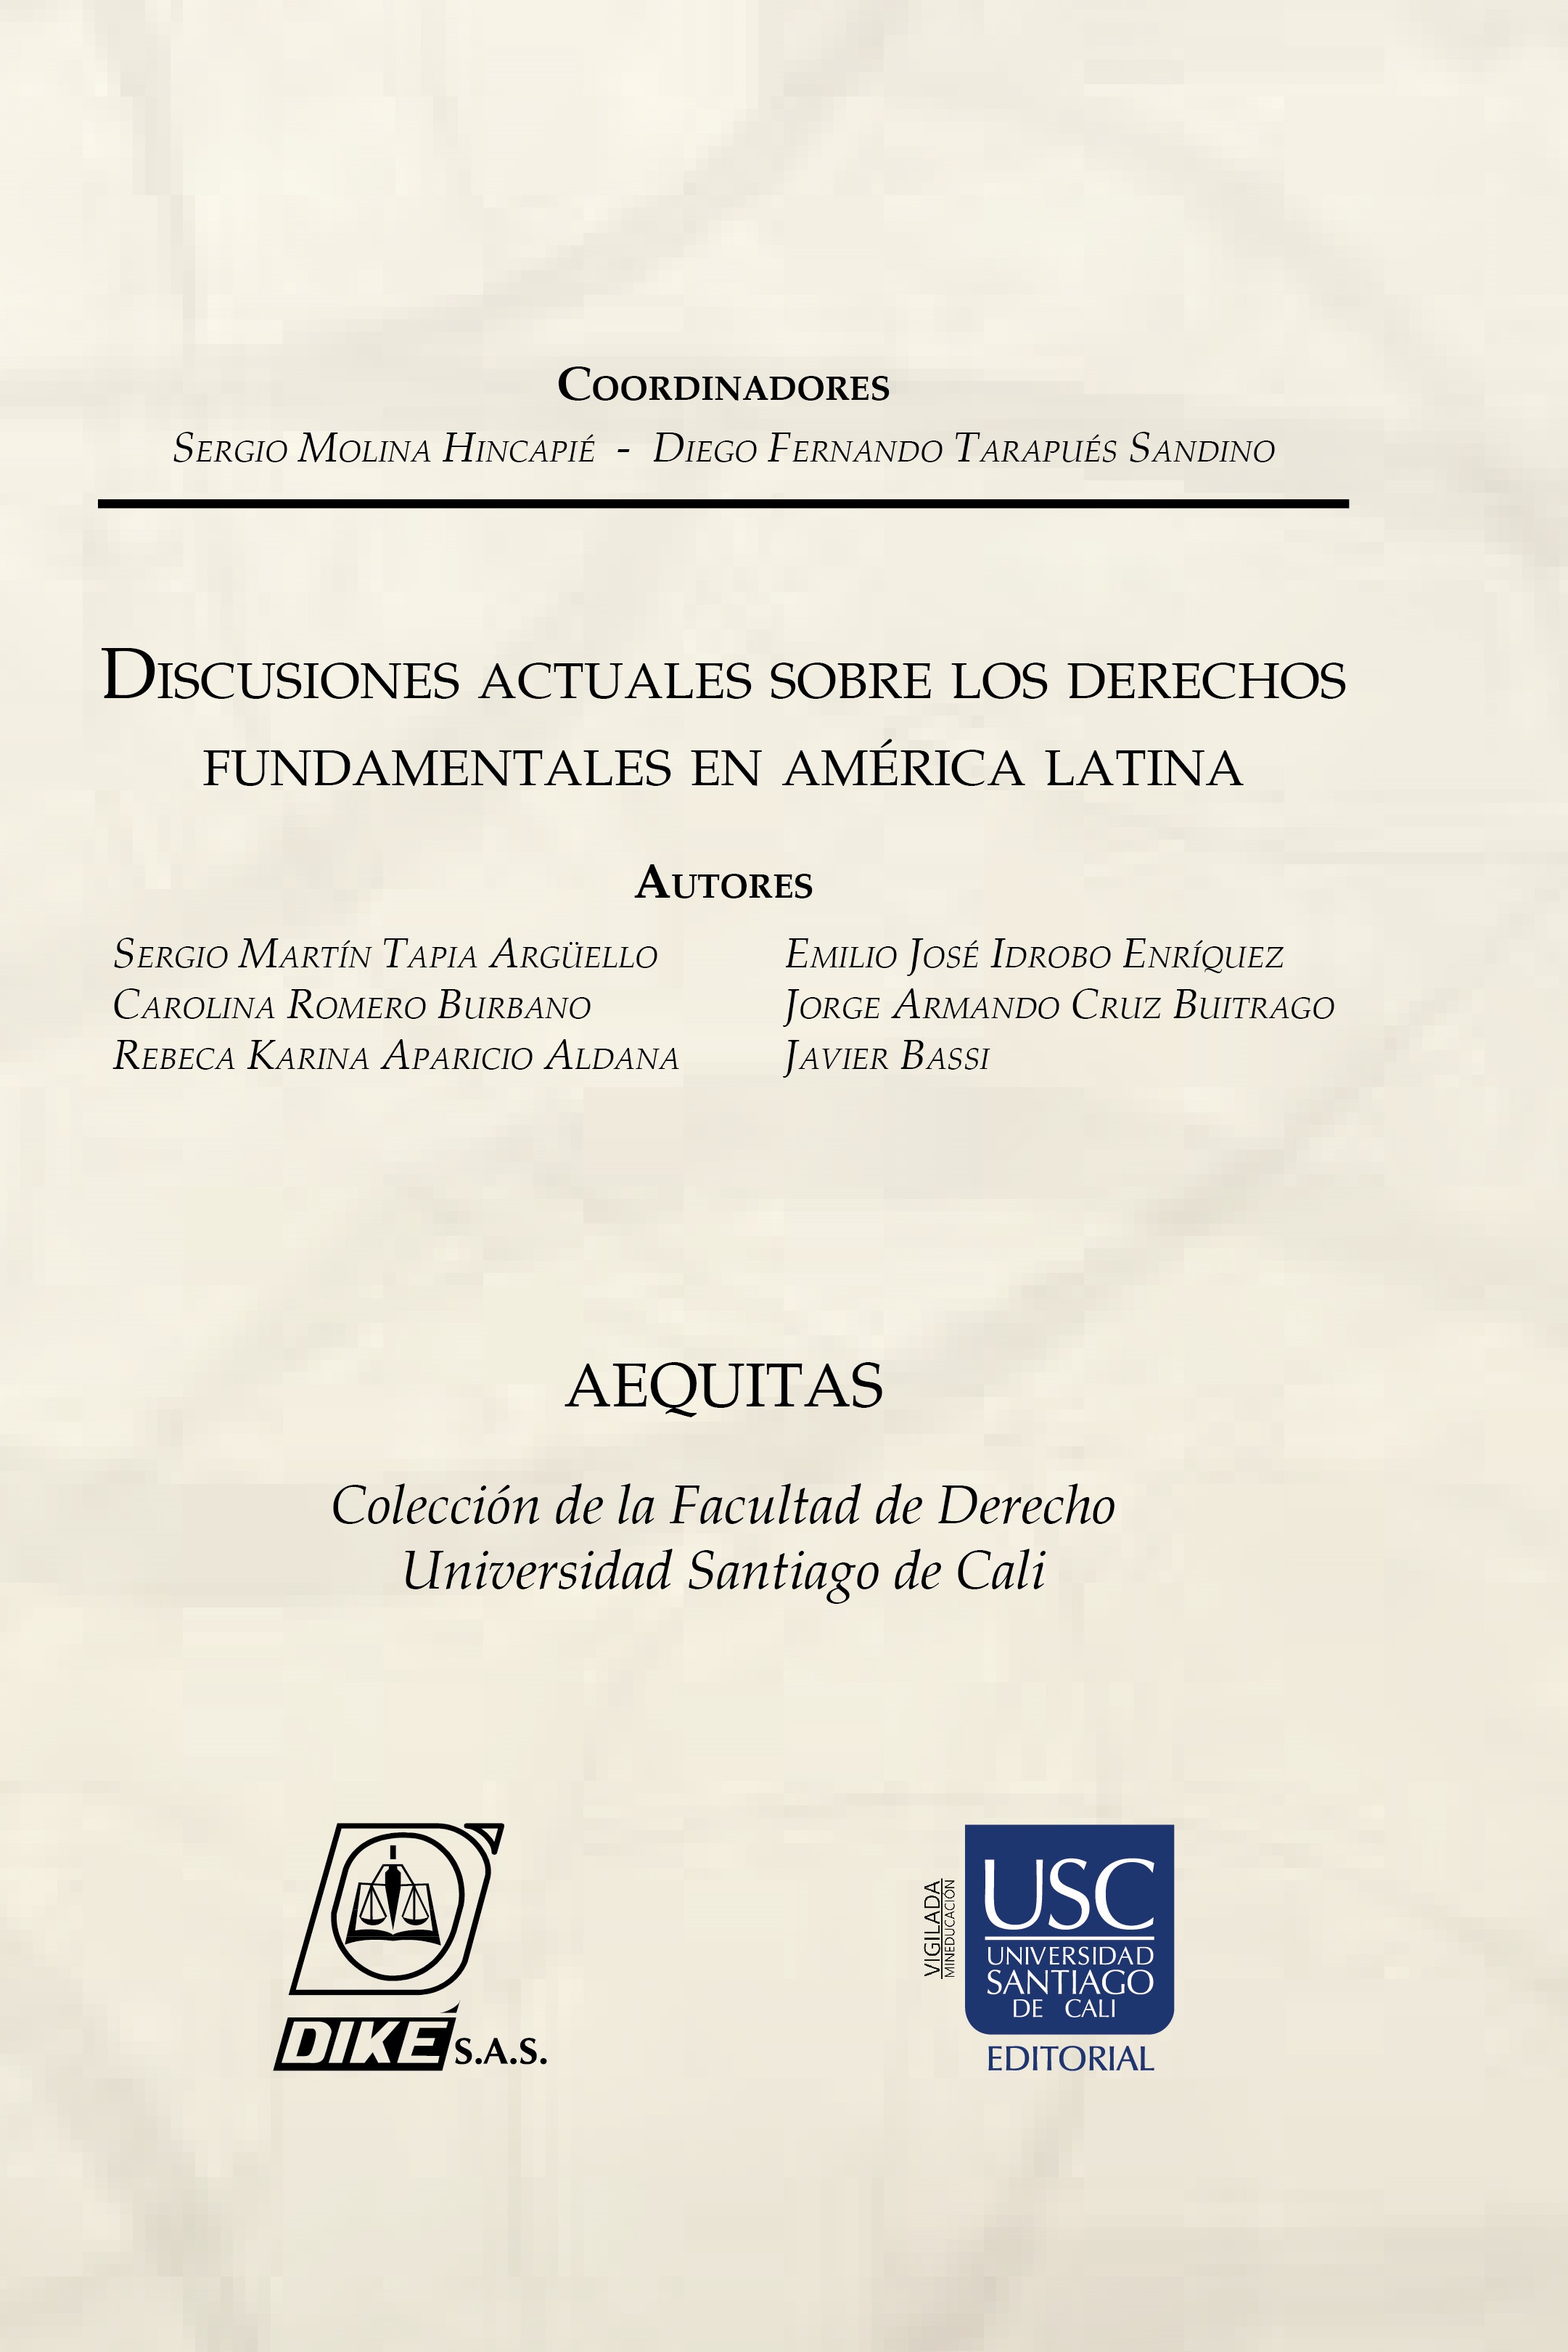 Imagen de portada del libro Discusiones actuales sobre los derechos fundamentales de América Latina